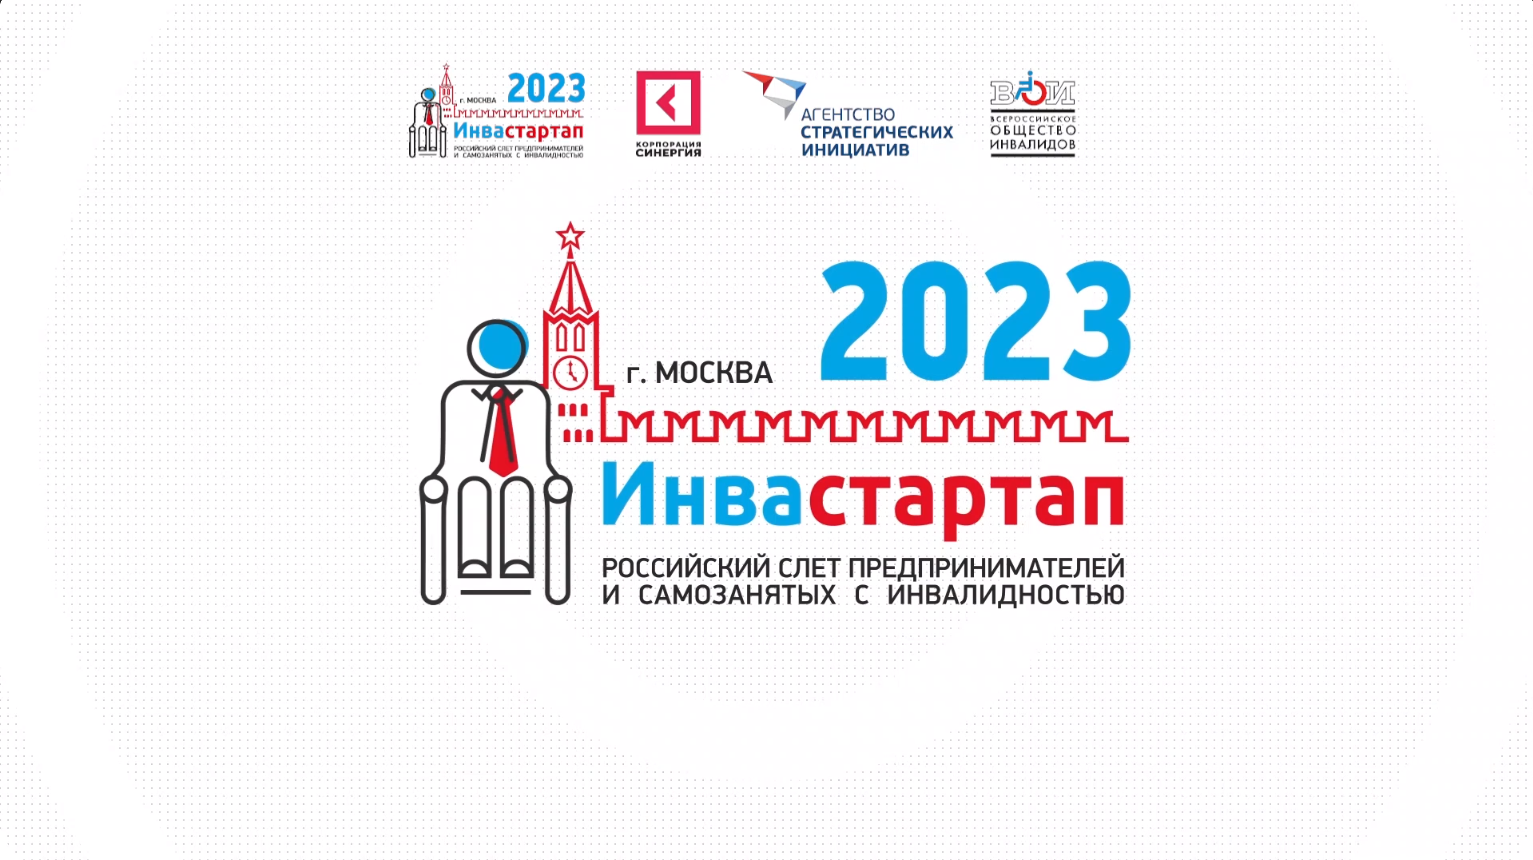 Трансляция Российского слета предпринимателей и самозанятых с инвалидностью "Инвастартап 2023".